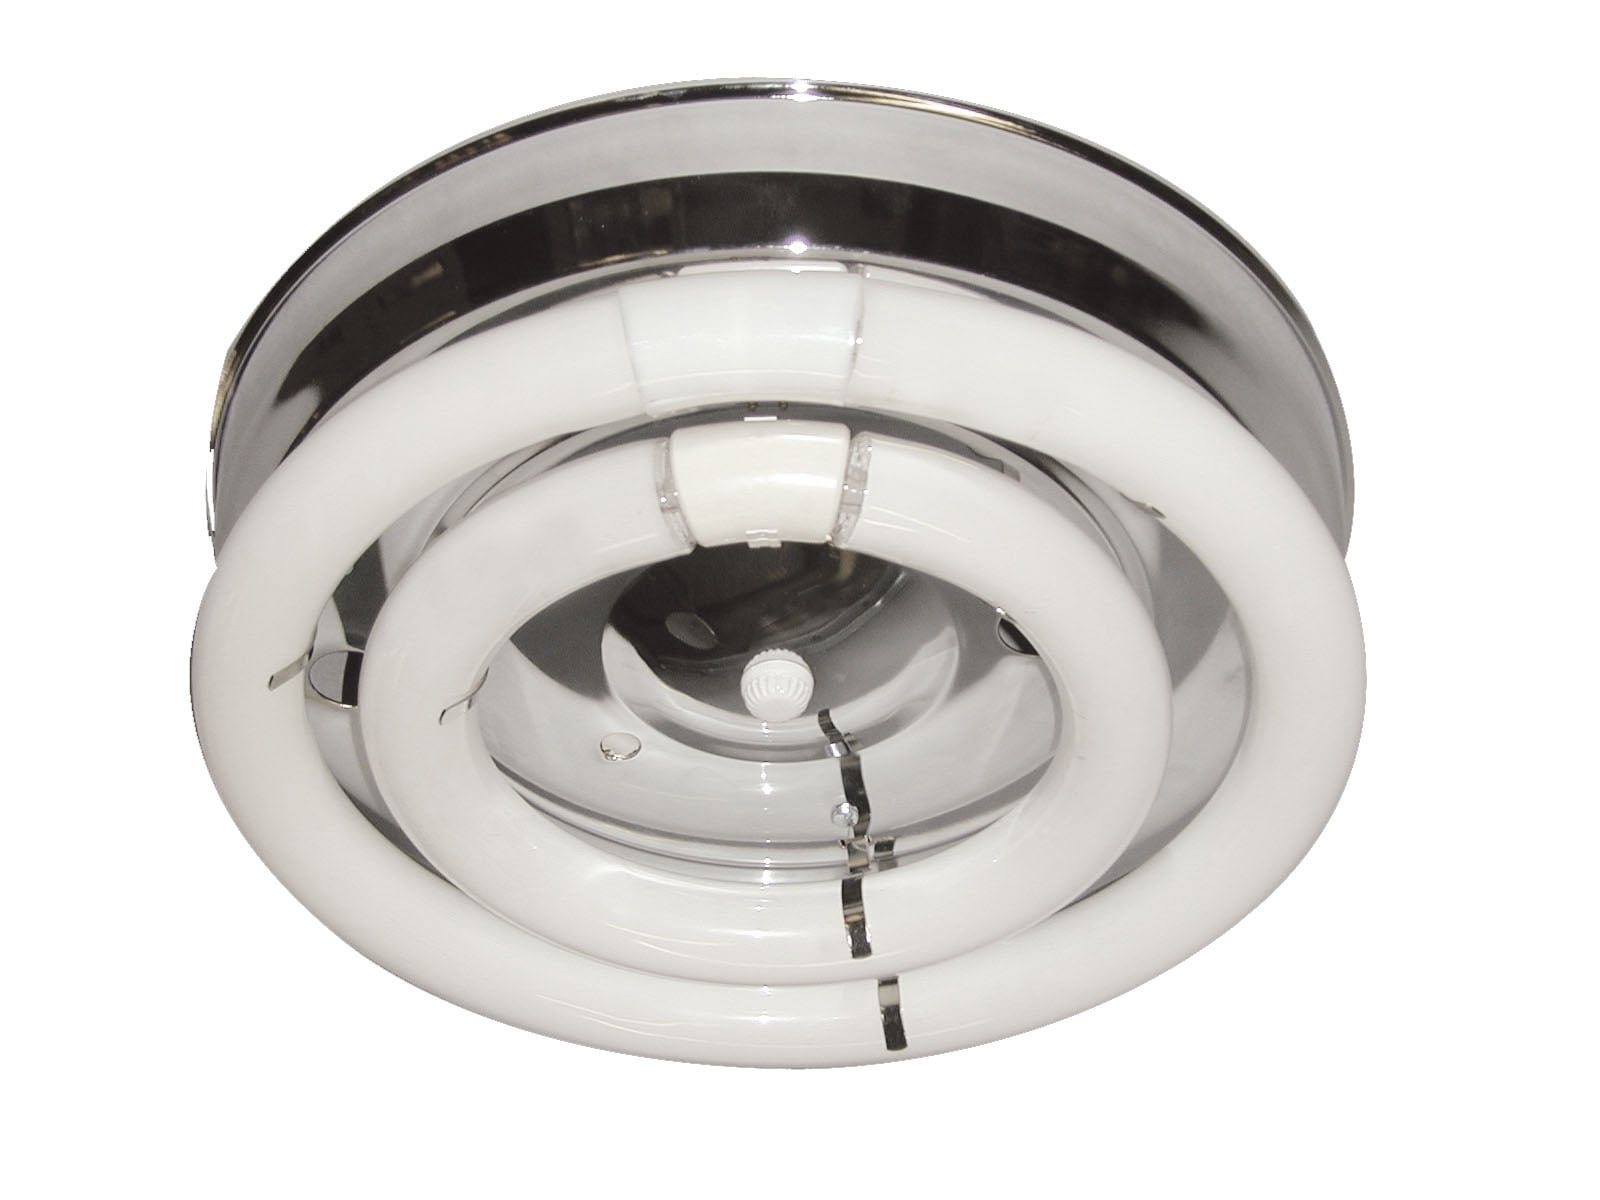 circular kitchen light bulb flickering